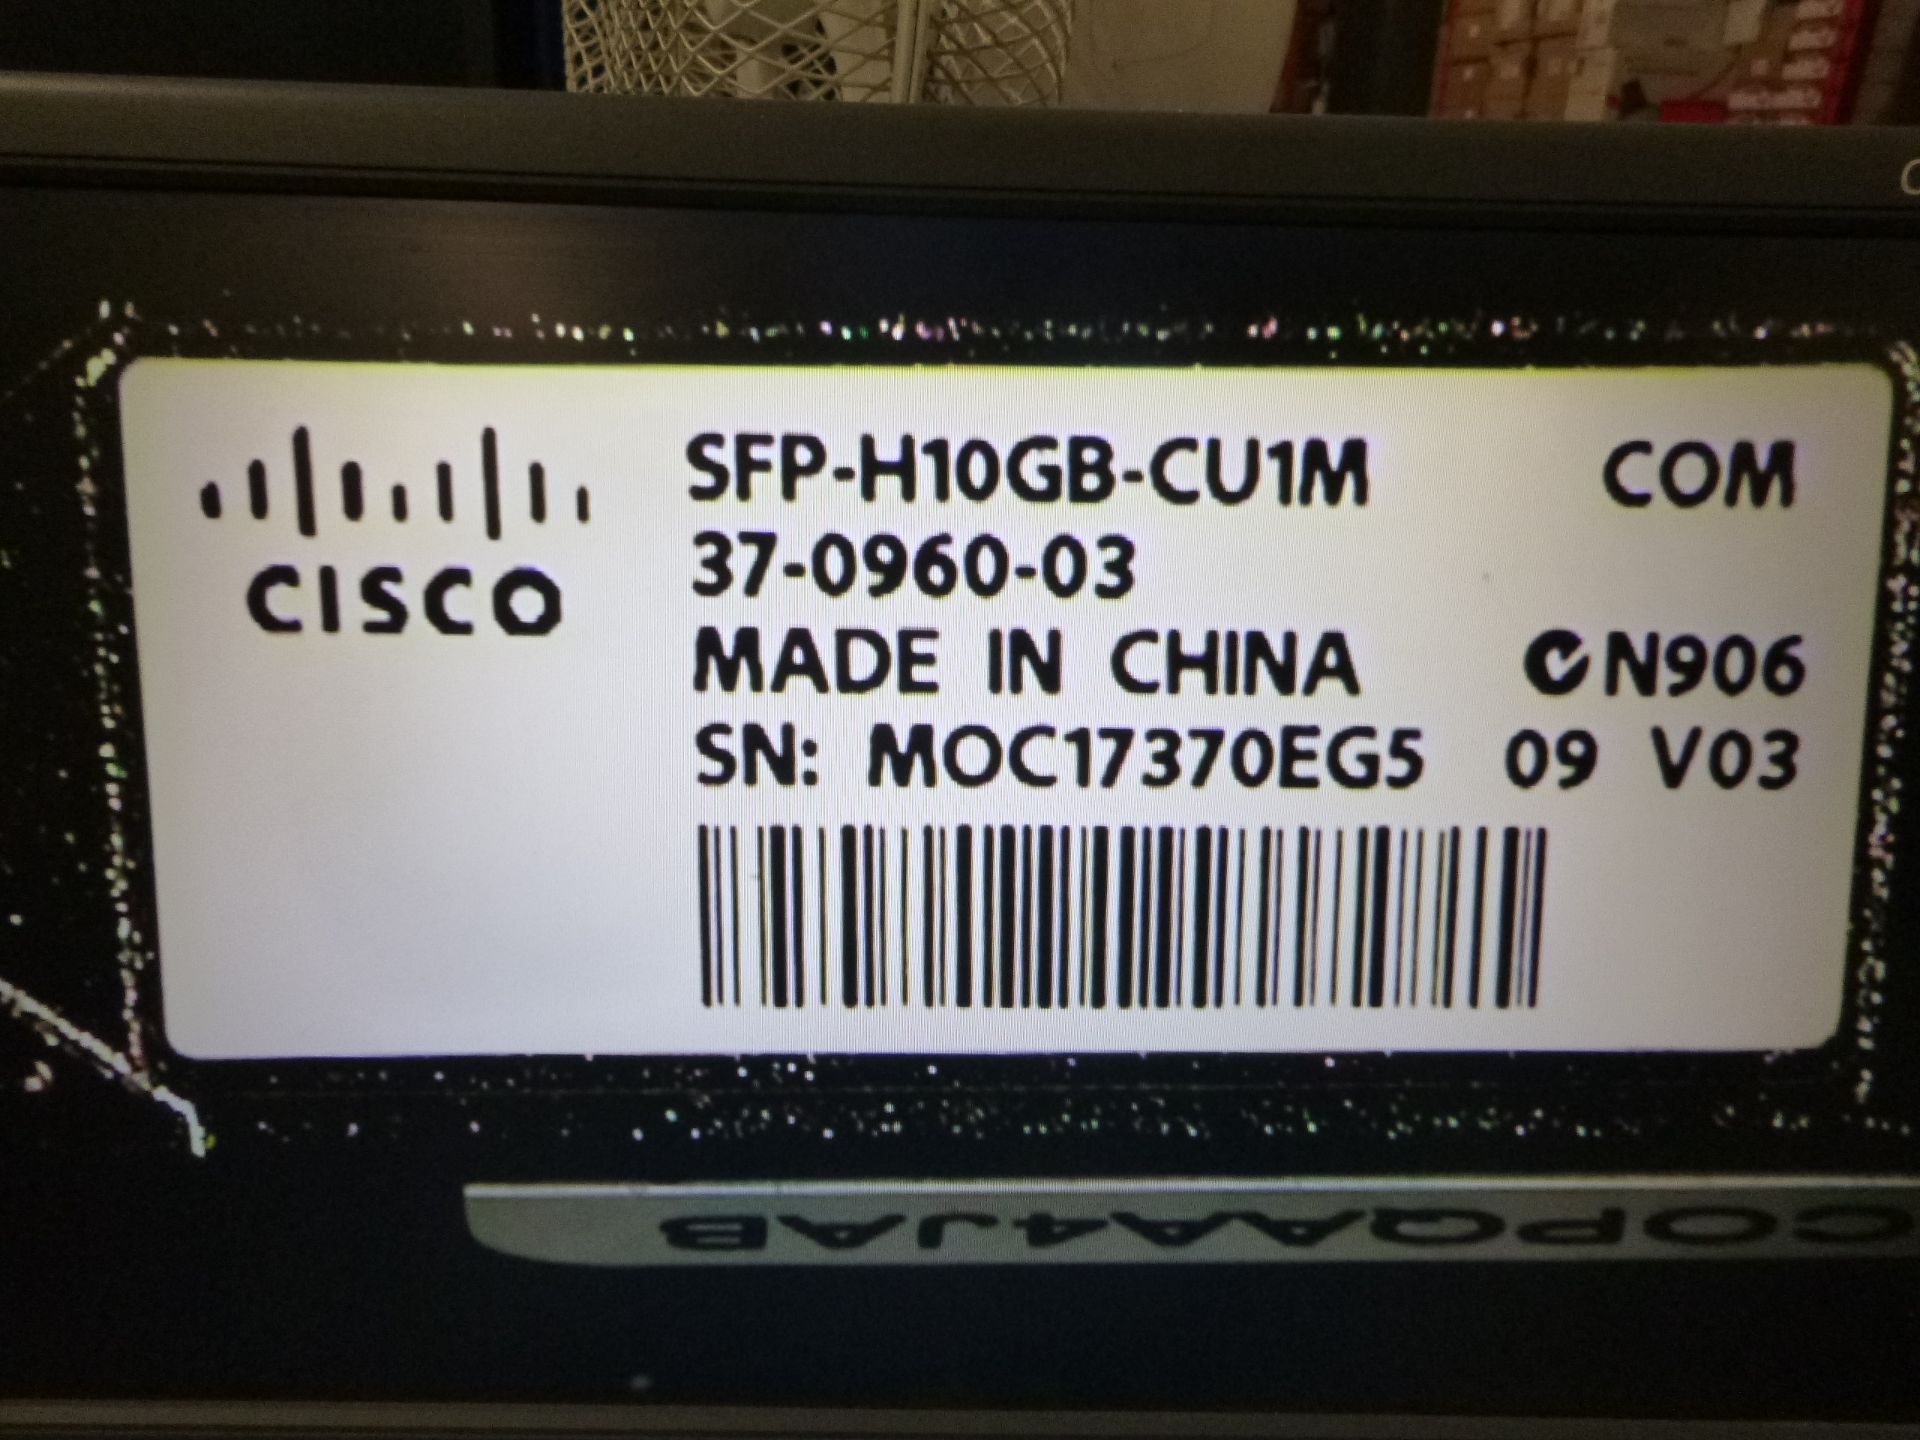 5 X Cisco 1M SFP cable SFP-H10GB-CU1M 37-0960-03 v03